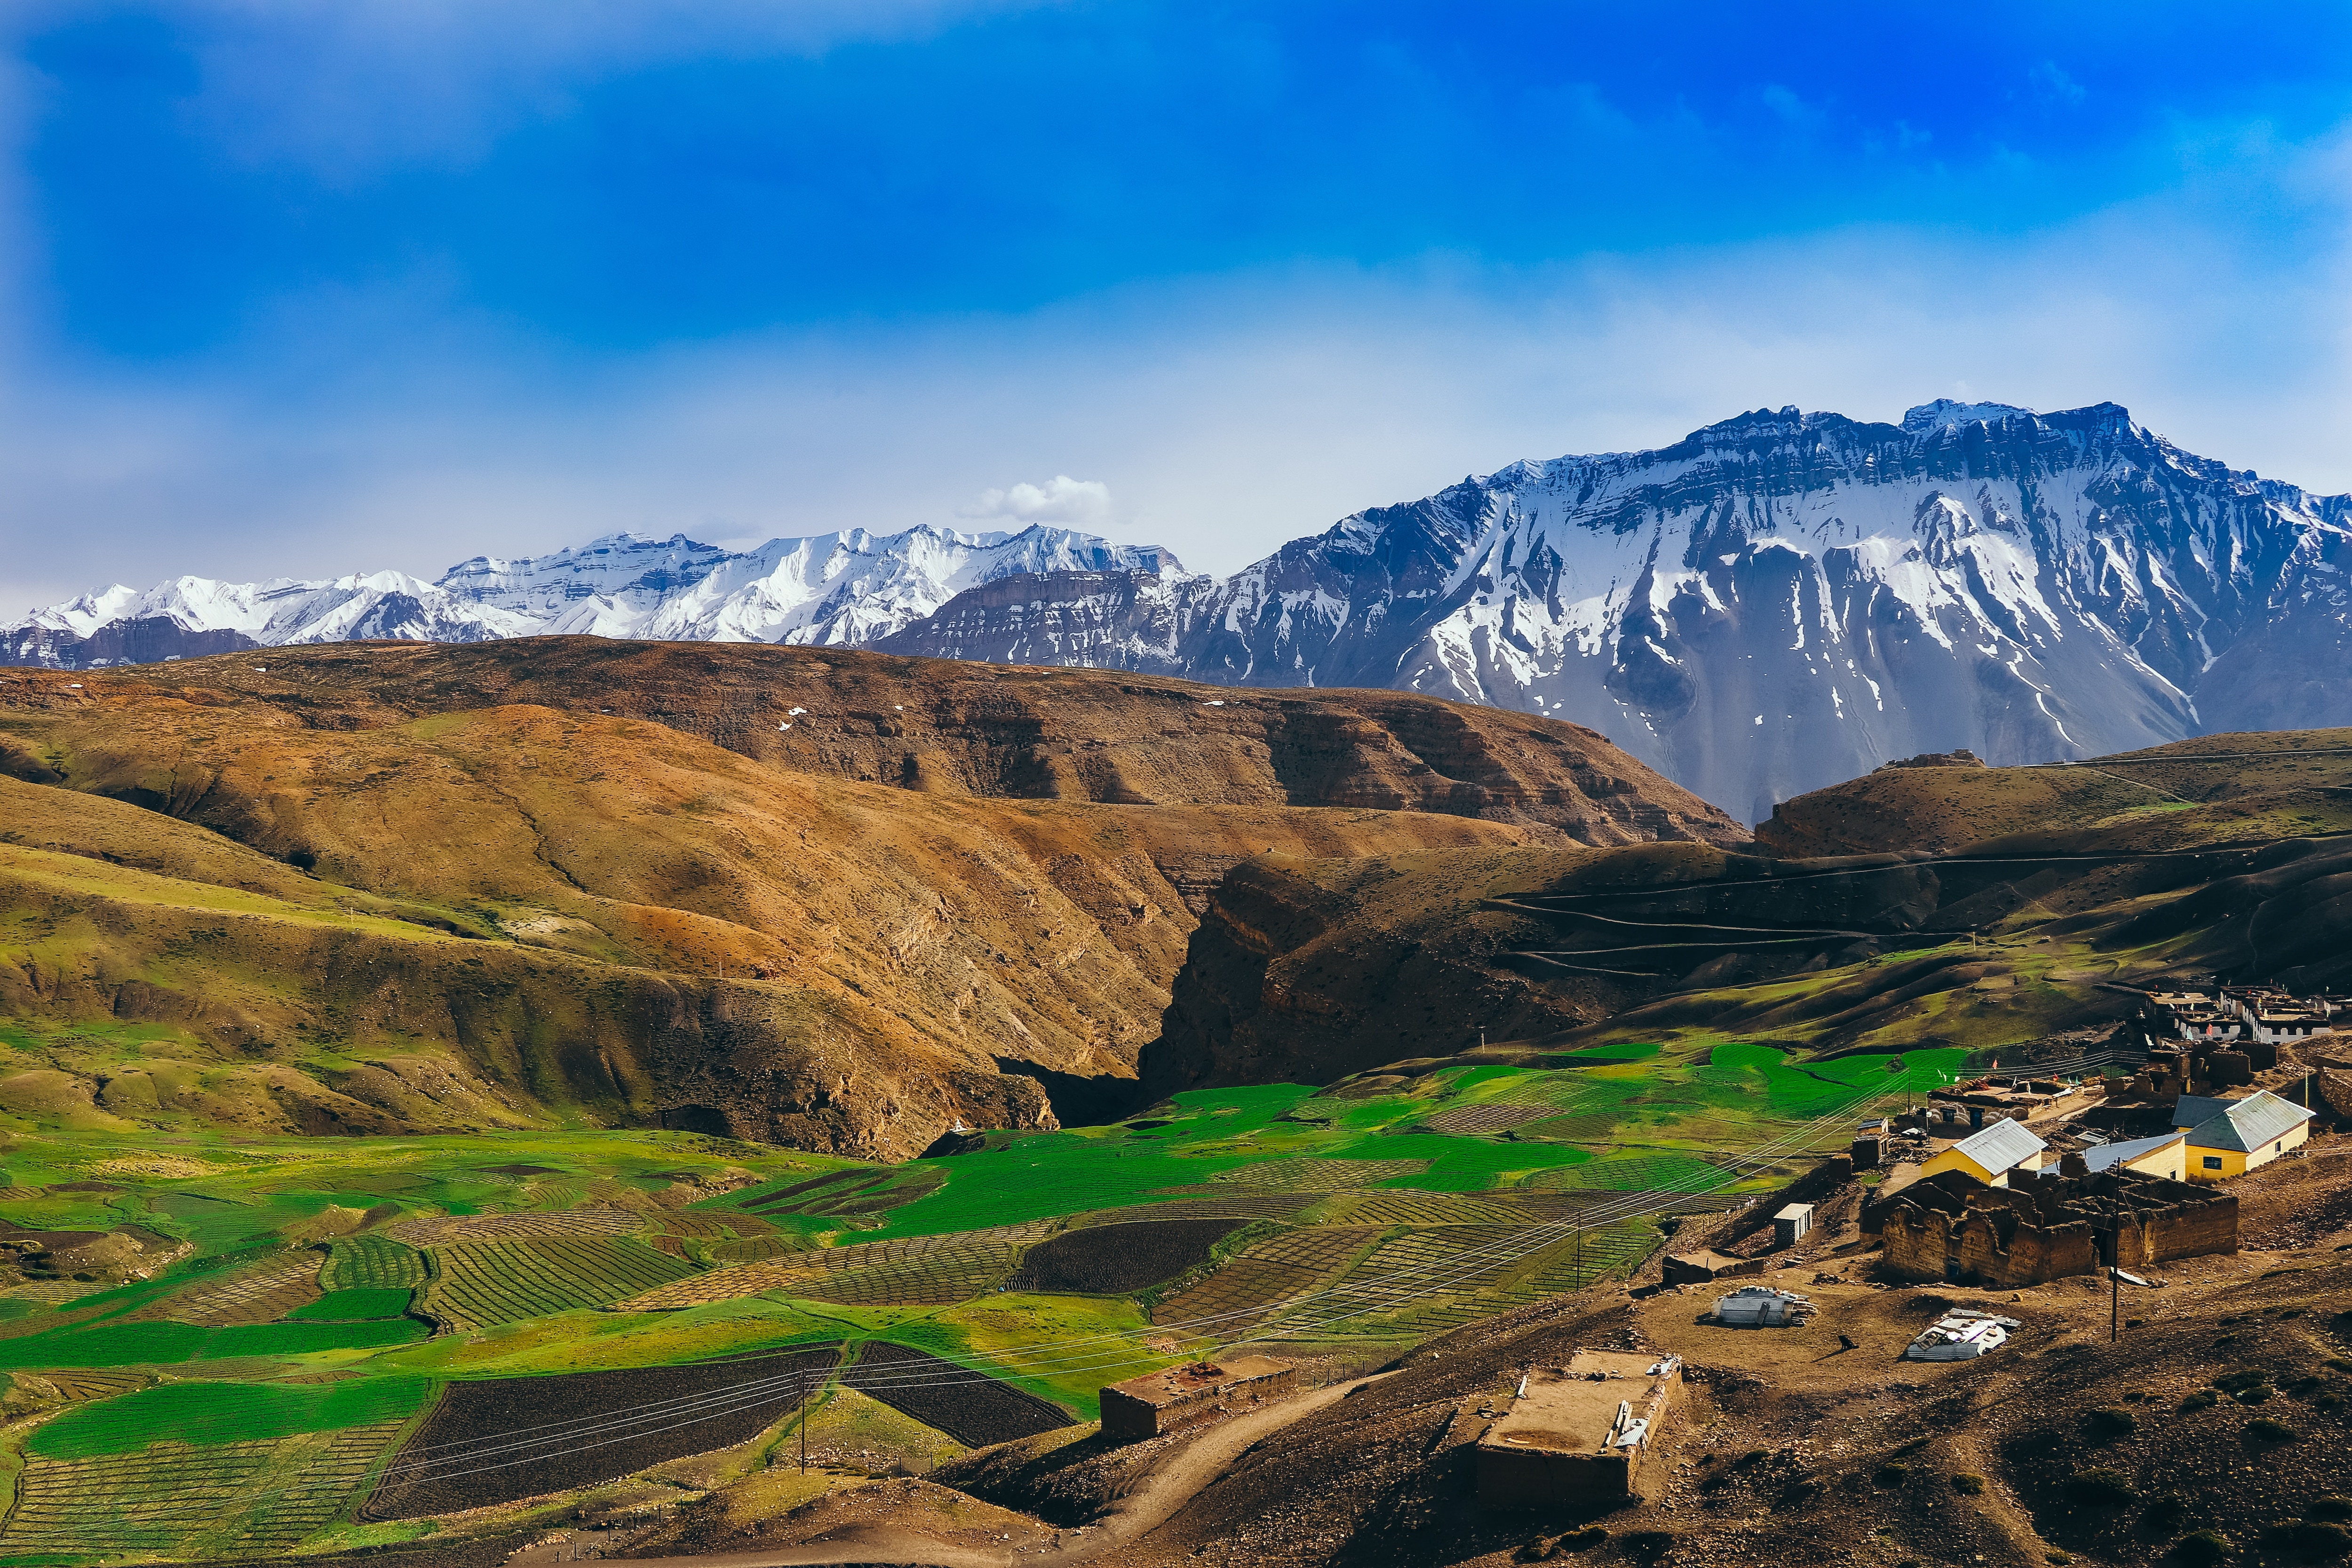   Hidden Gem: Lahaul Valley Travel Insights